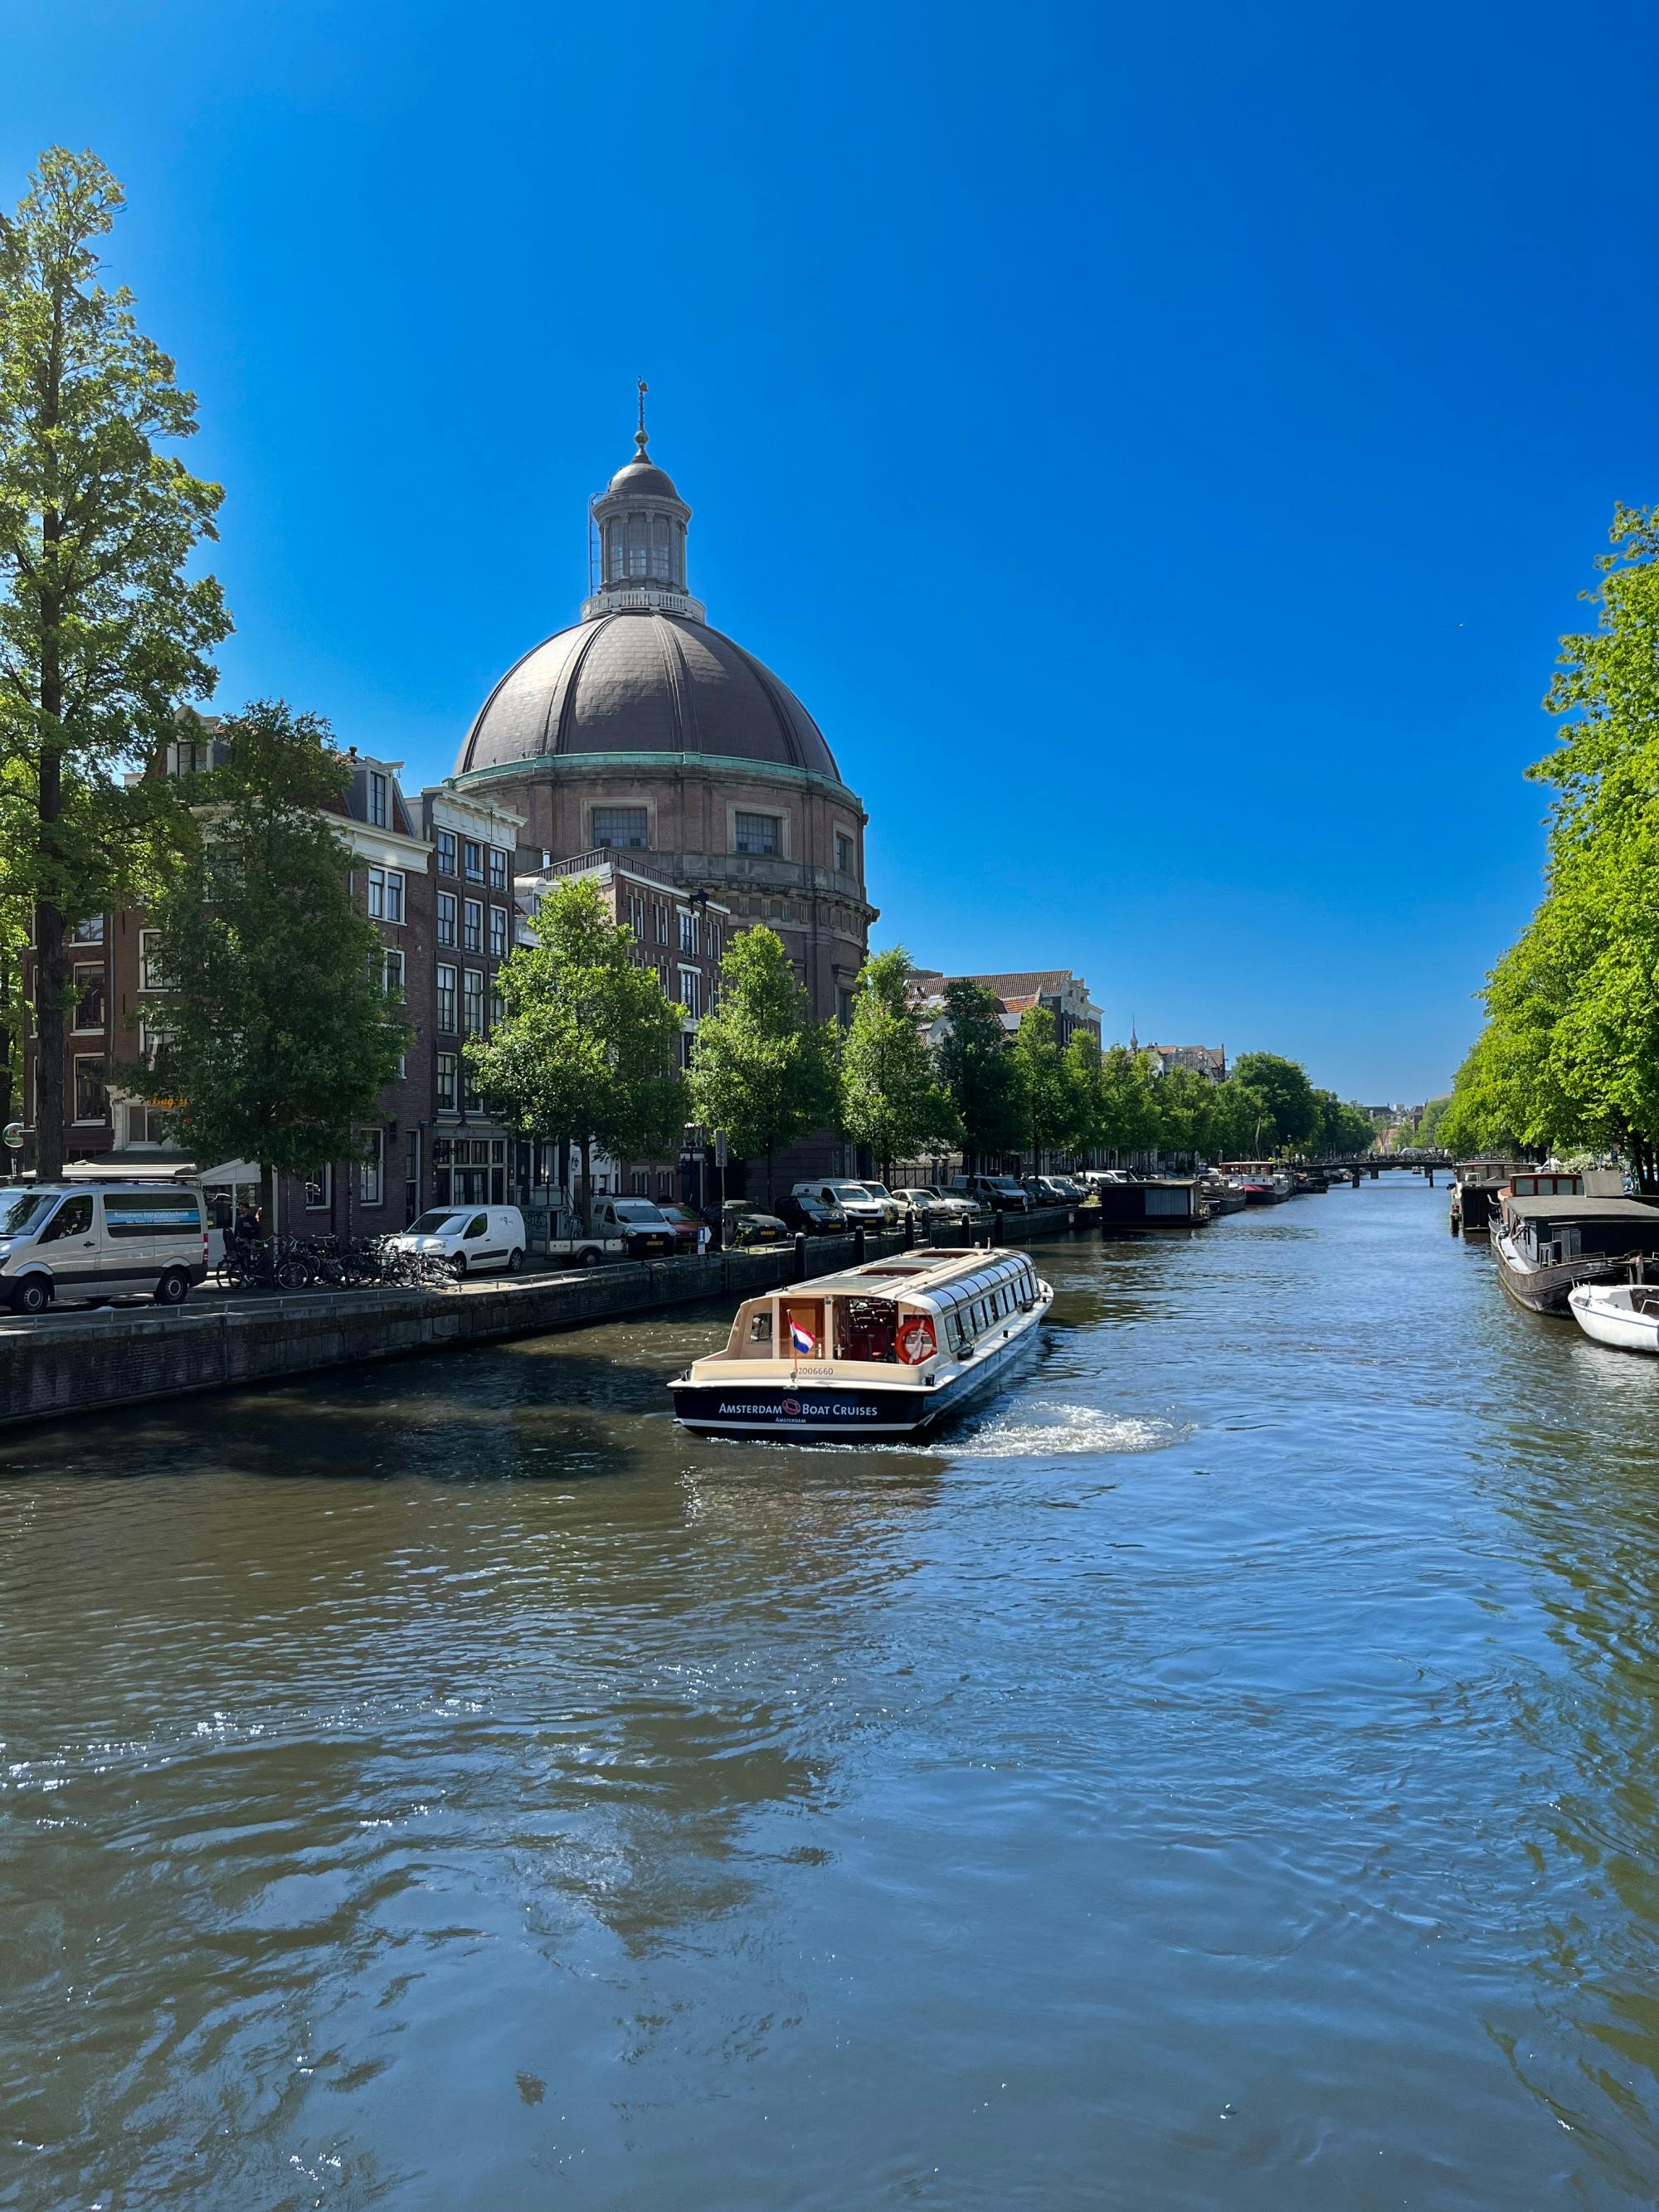 Punti salienti della crociera sui canali di Amsterdam di 75 minuti